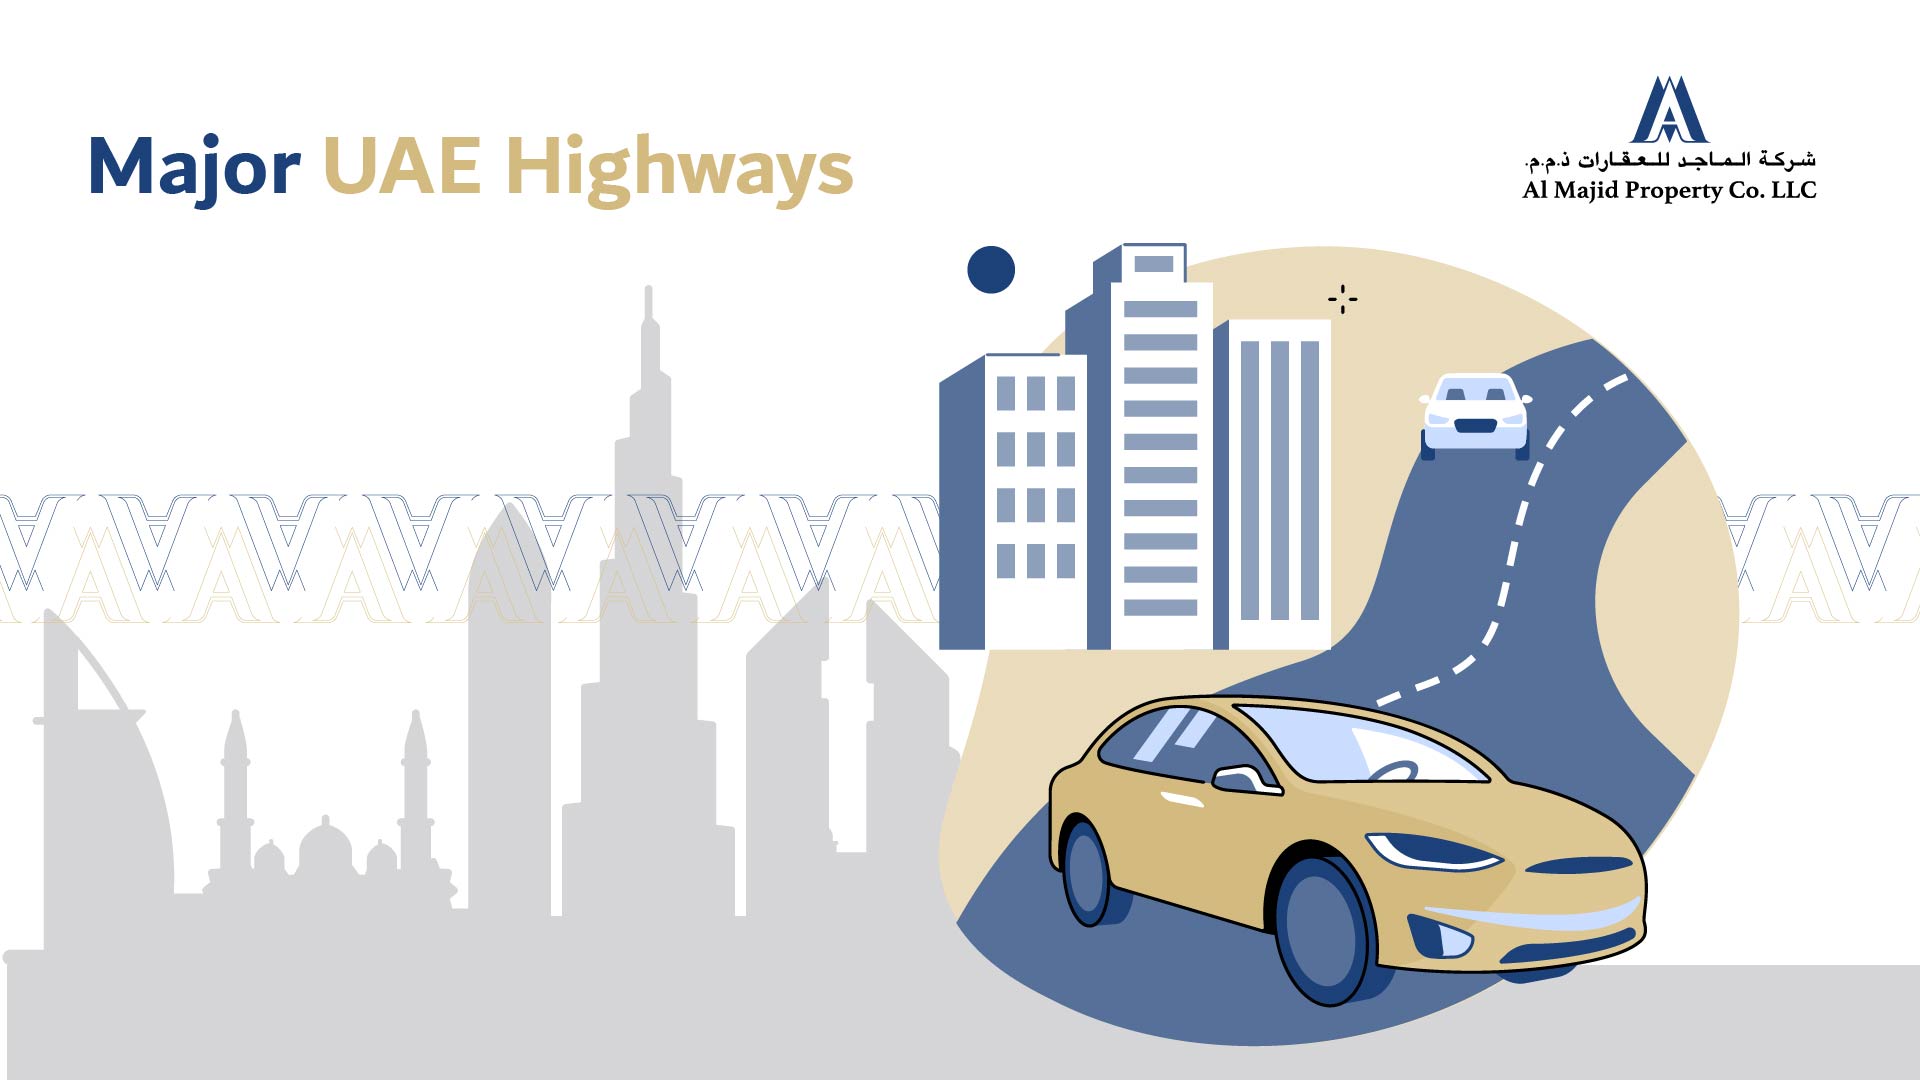 UAE Highways